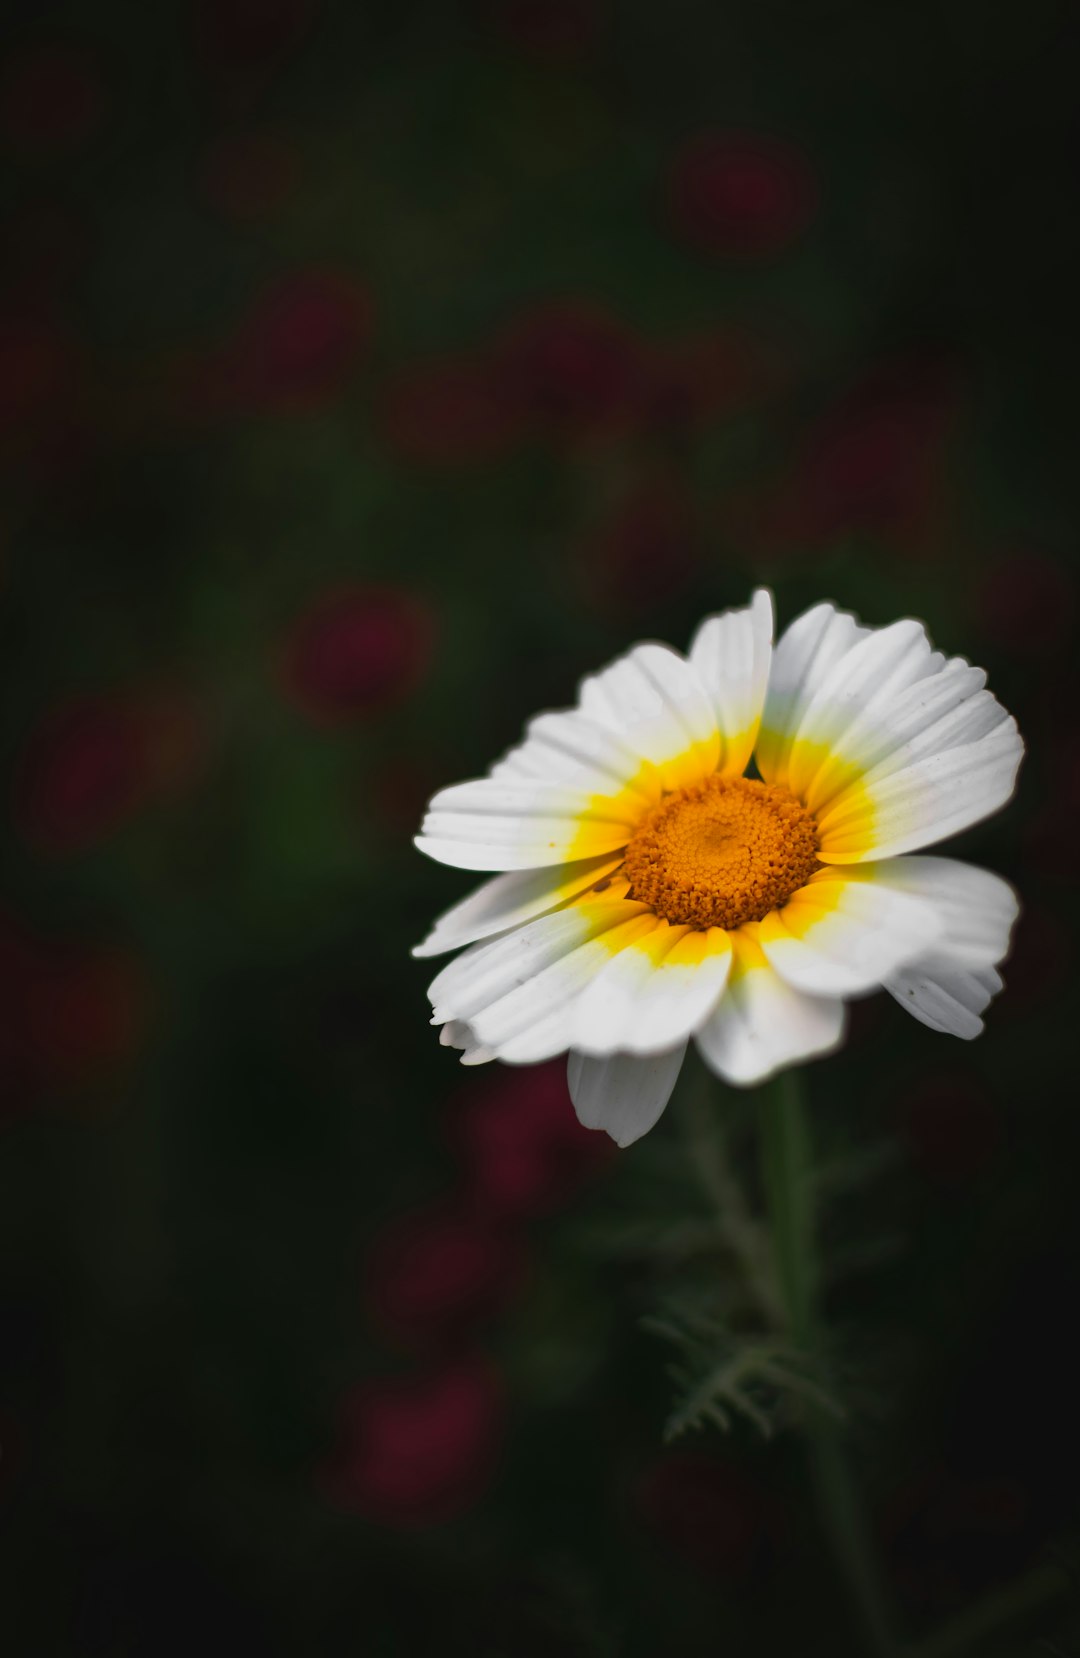 white Daisy flower